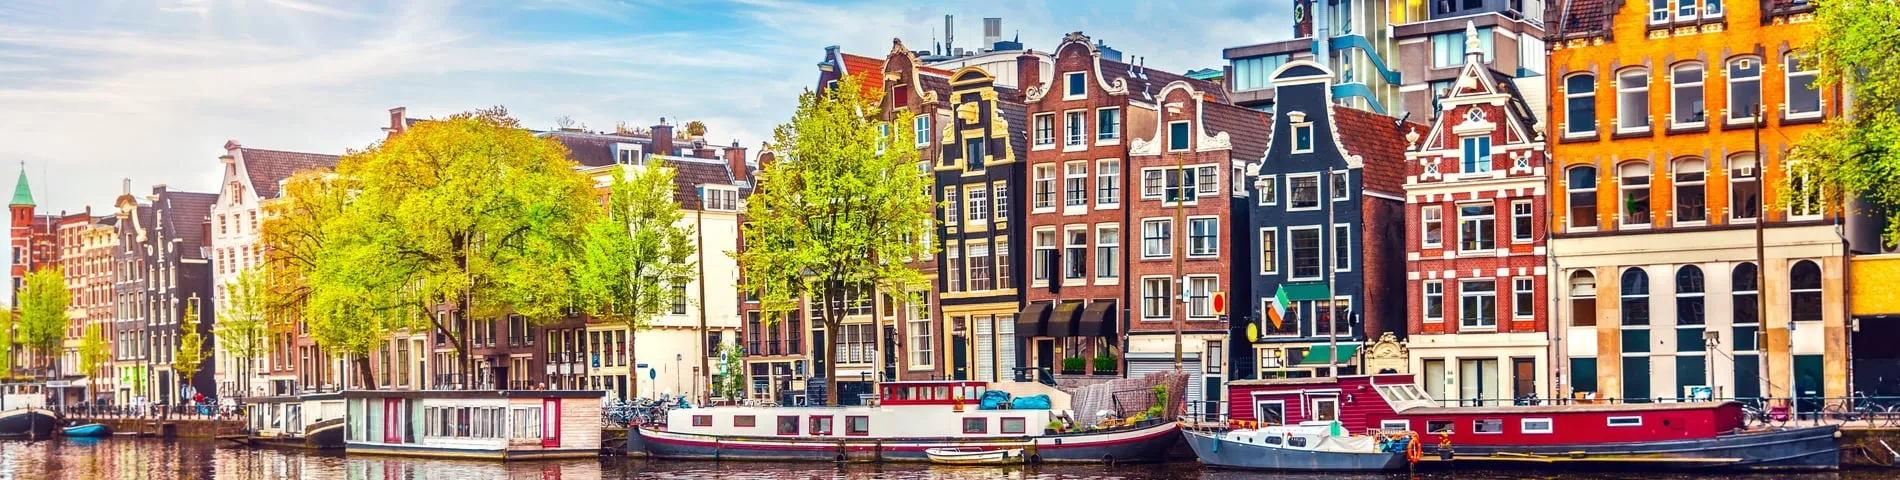 أمستردام - الامتحانات الأخرى